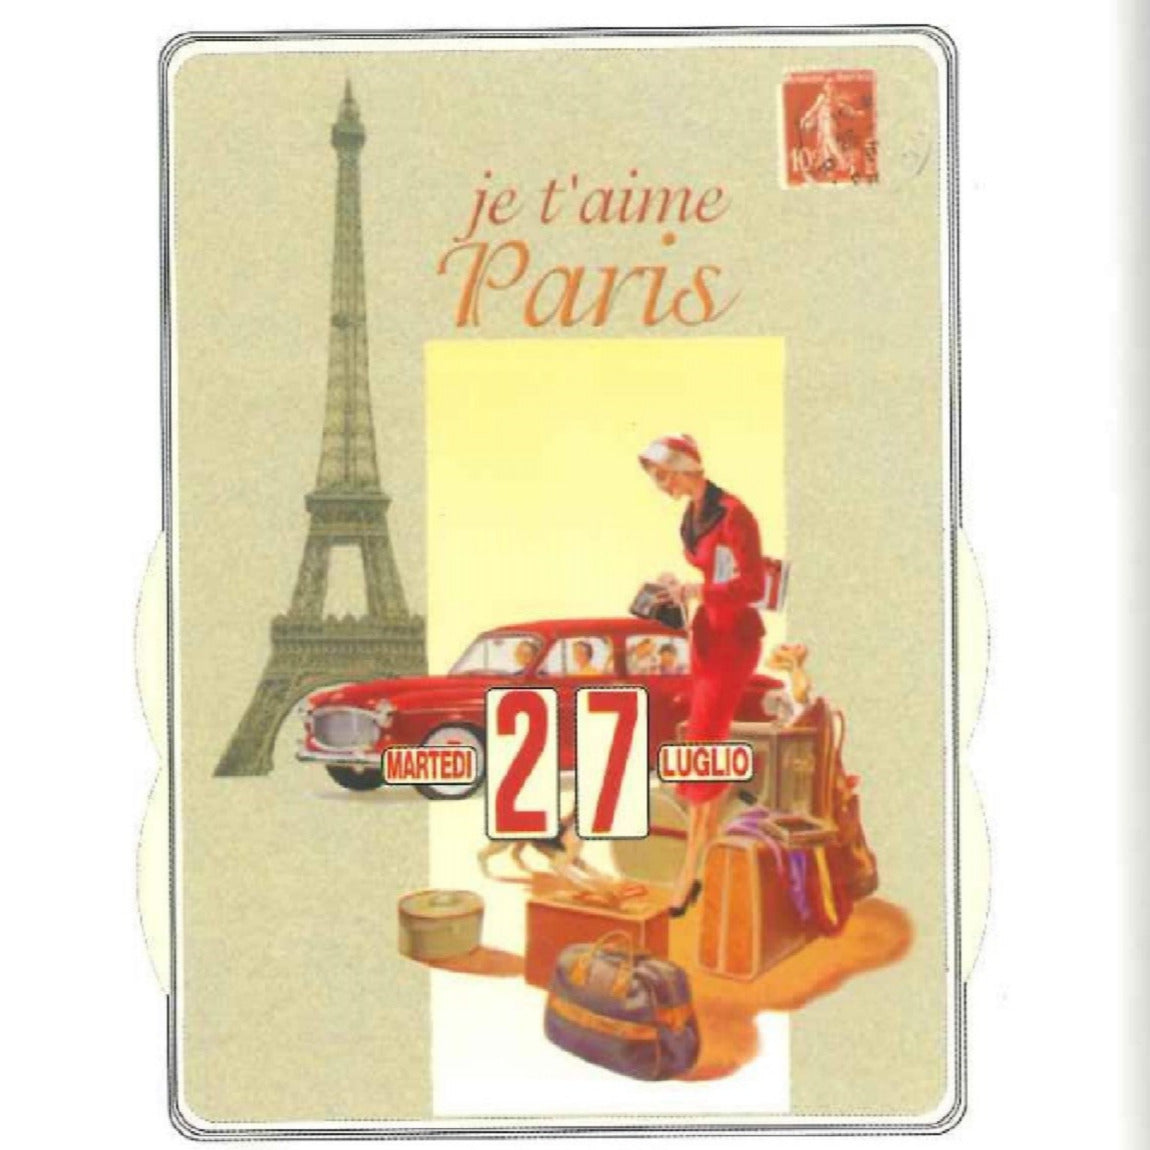 Calendario Perpetuo Je t'aime Paris That's Italia